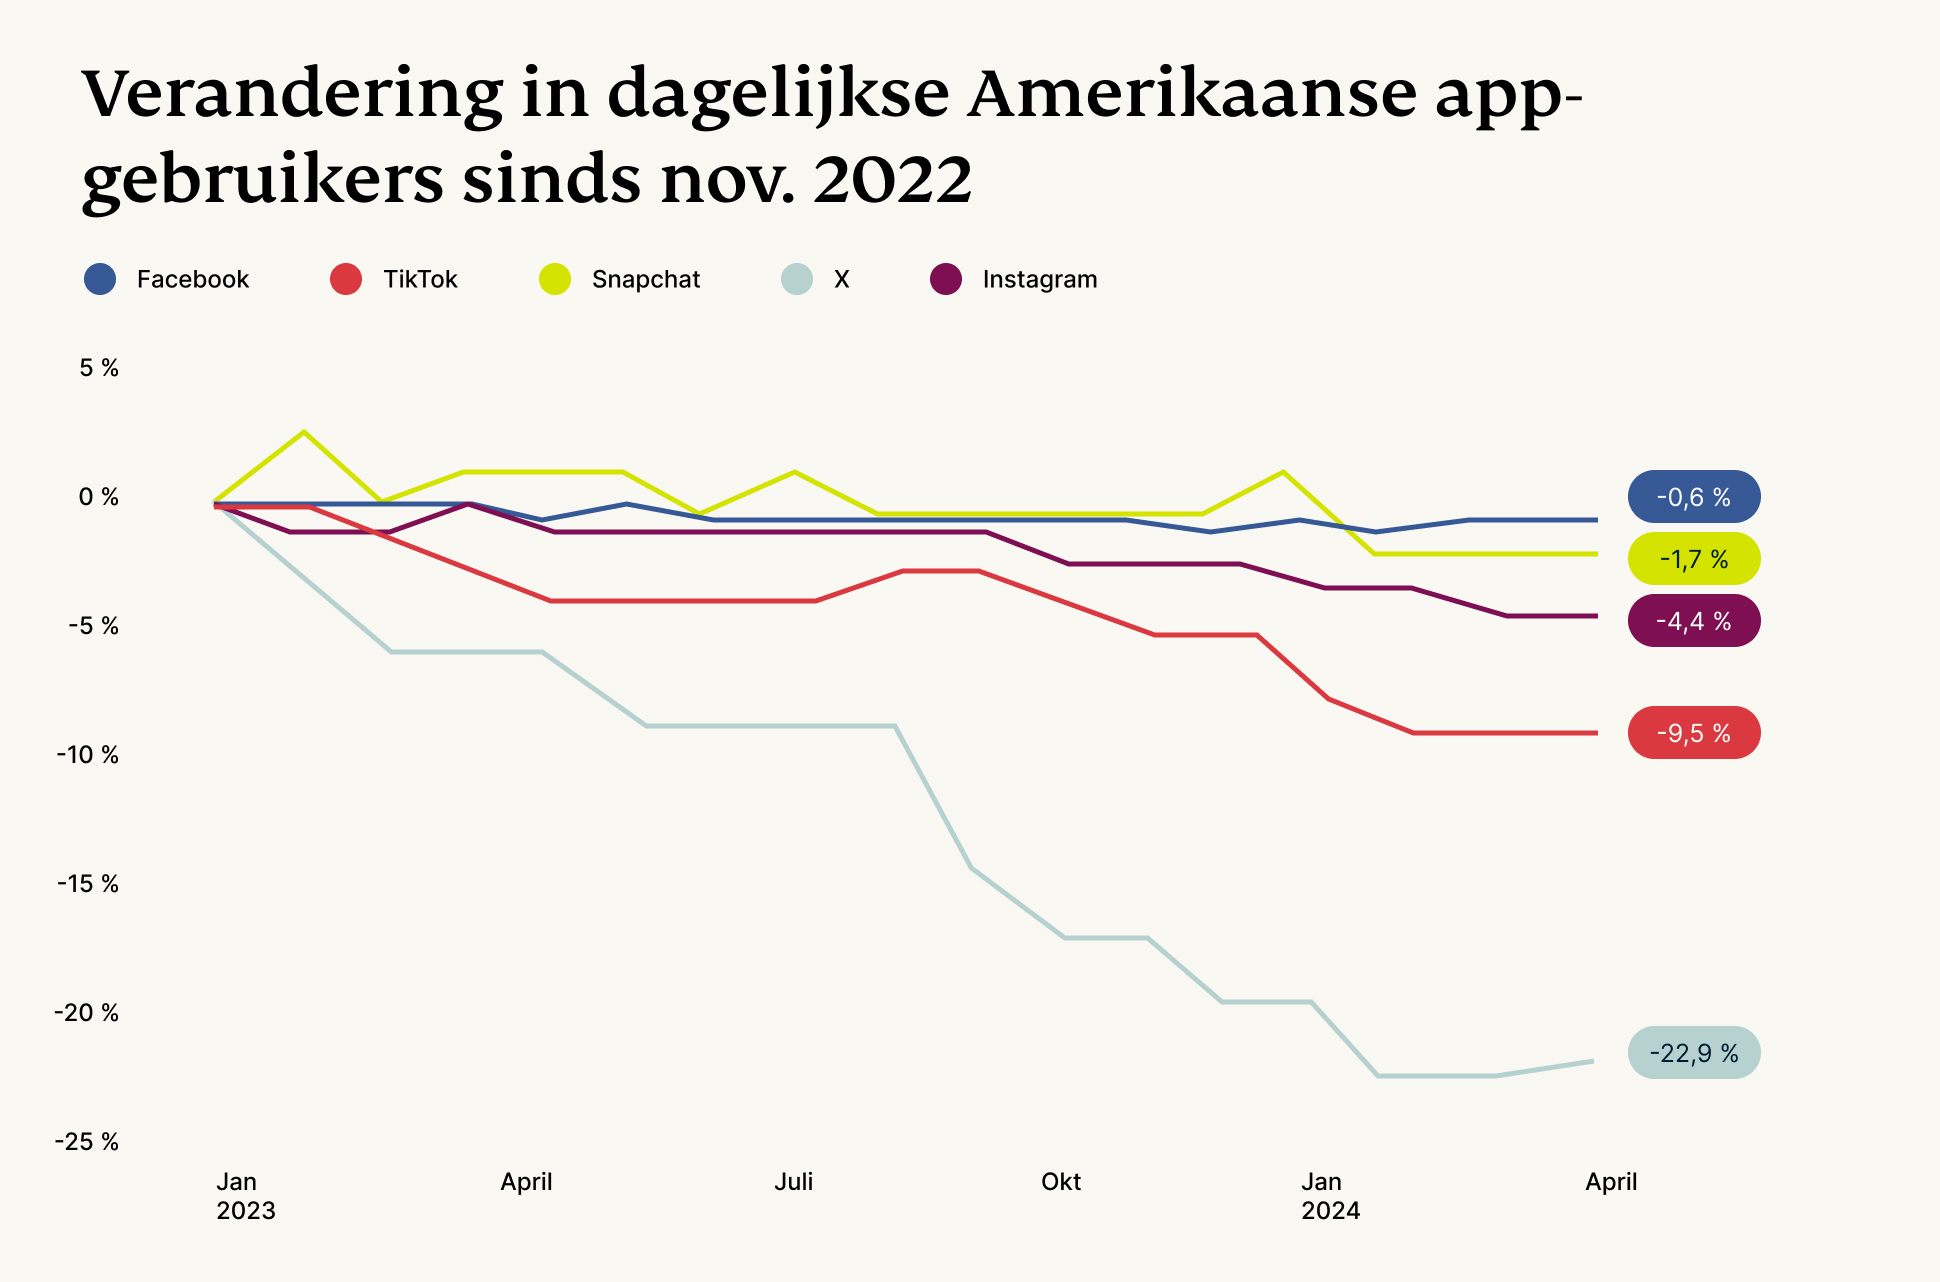 Verandering in dagelijkse appgebruikers in de VS sinds november 2022.